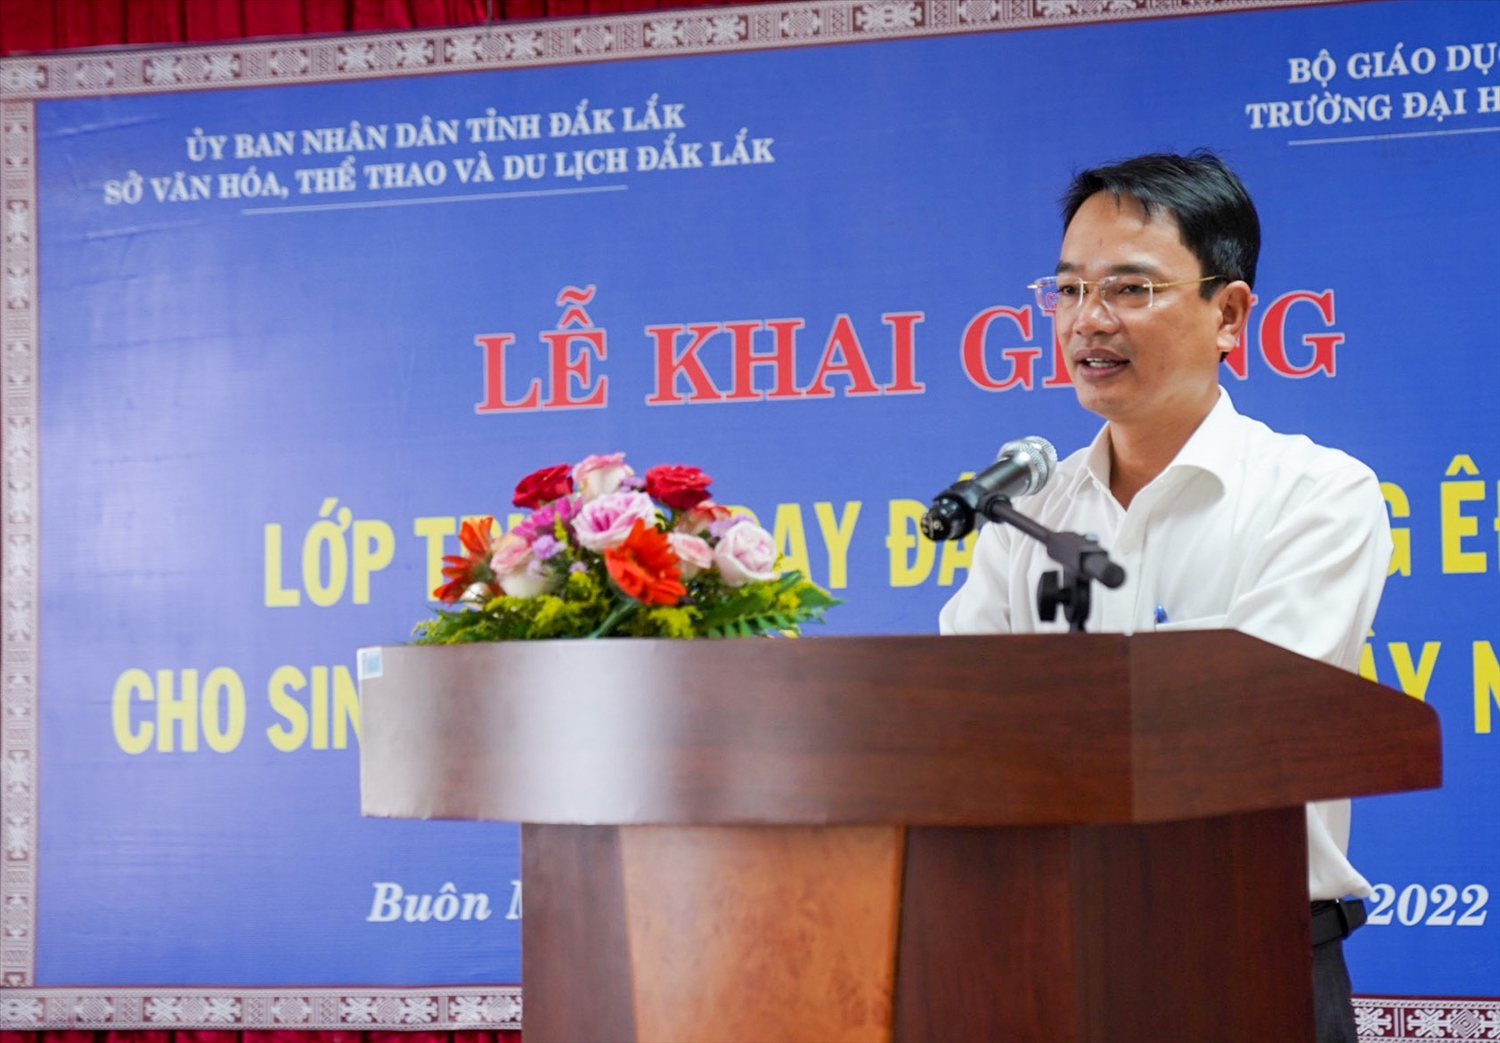 Ông Đặng Gia Duẩn - Phó Giám đốc Sở Văn hóa, Thể thao và Du lịch tỉnh Đắk Lắk phát biểu tại Lễ khai giảng